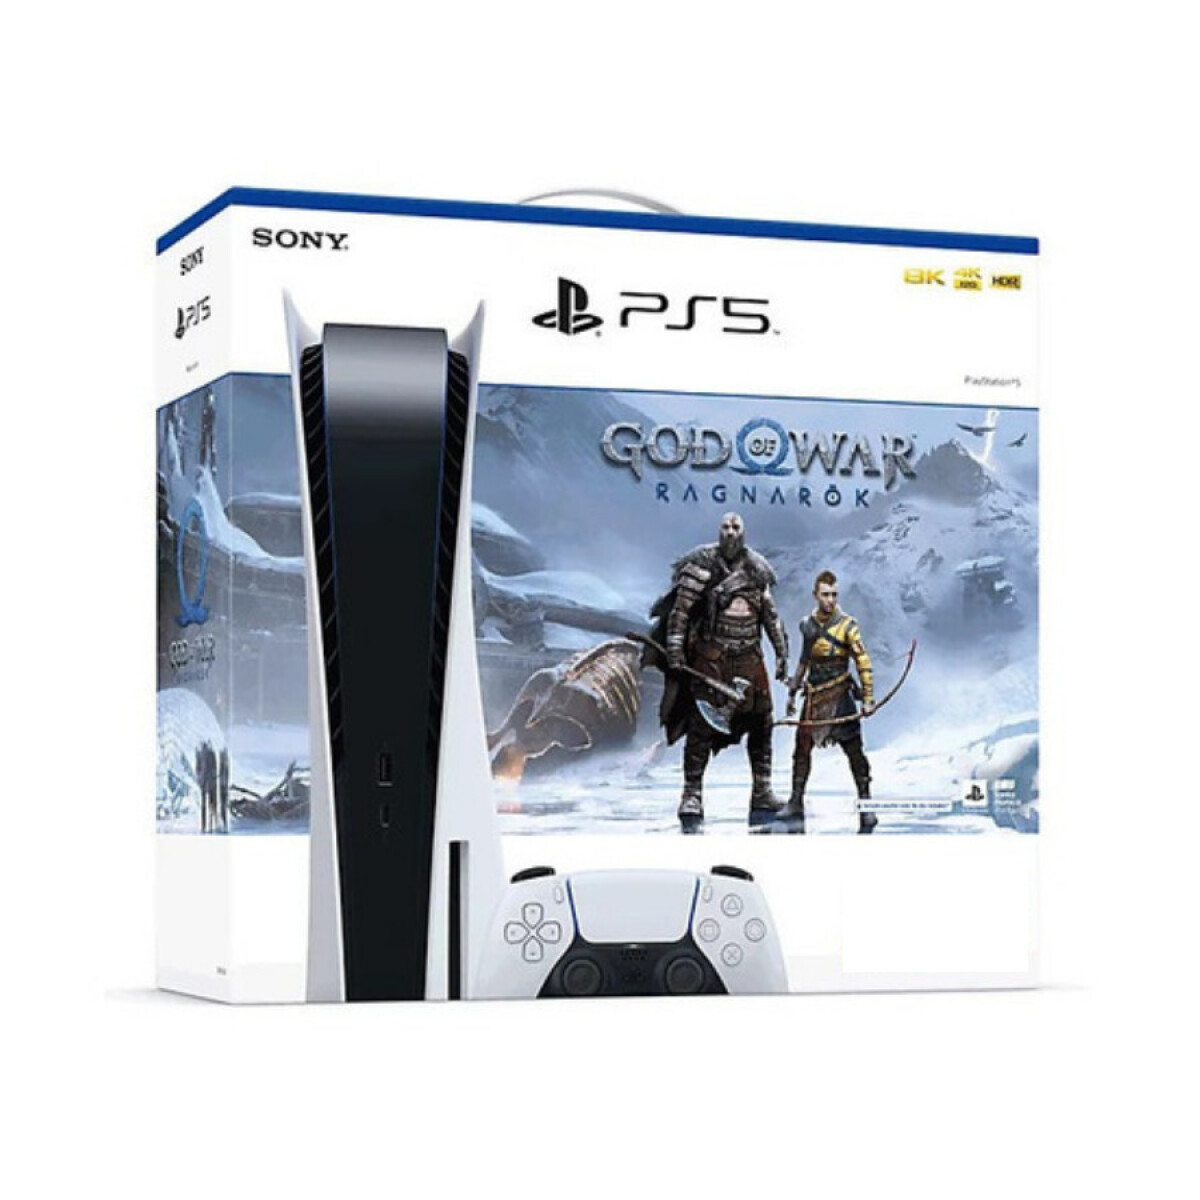 Playstation 5 Standard Edition PS5 God of War Bundle 